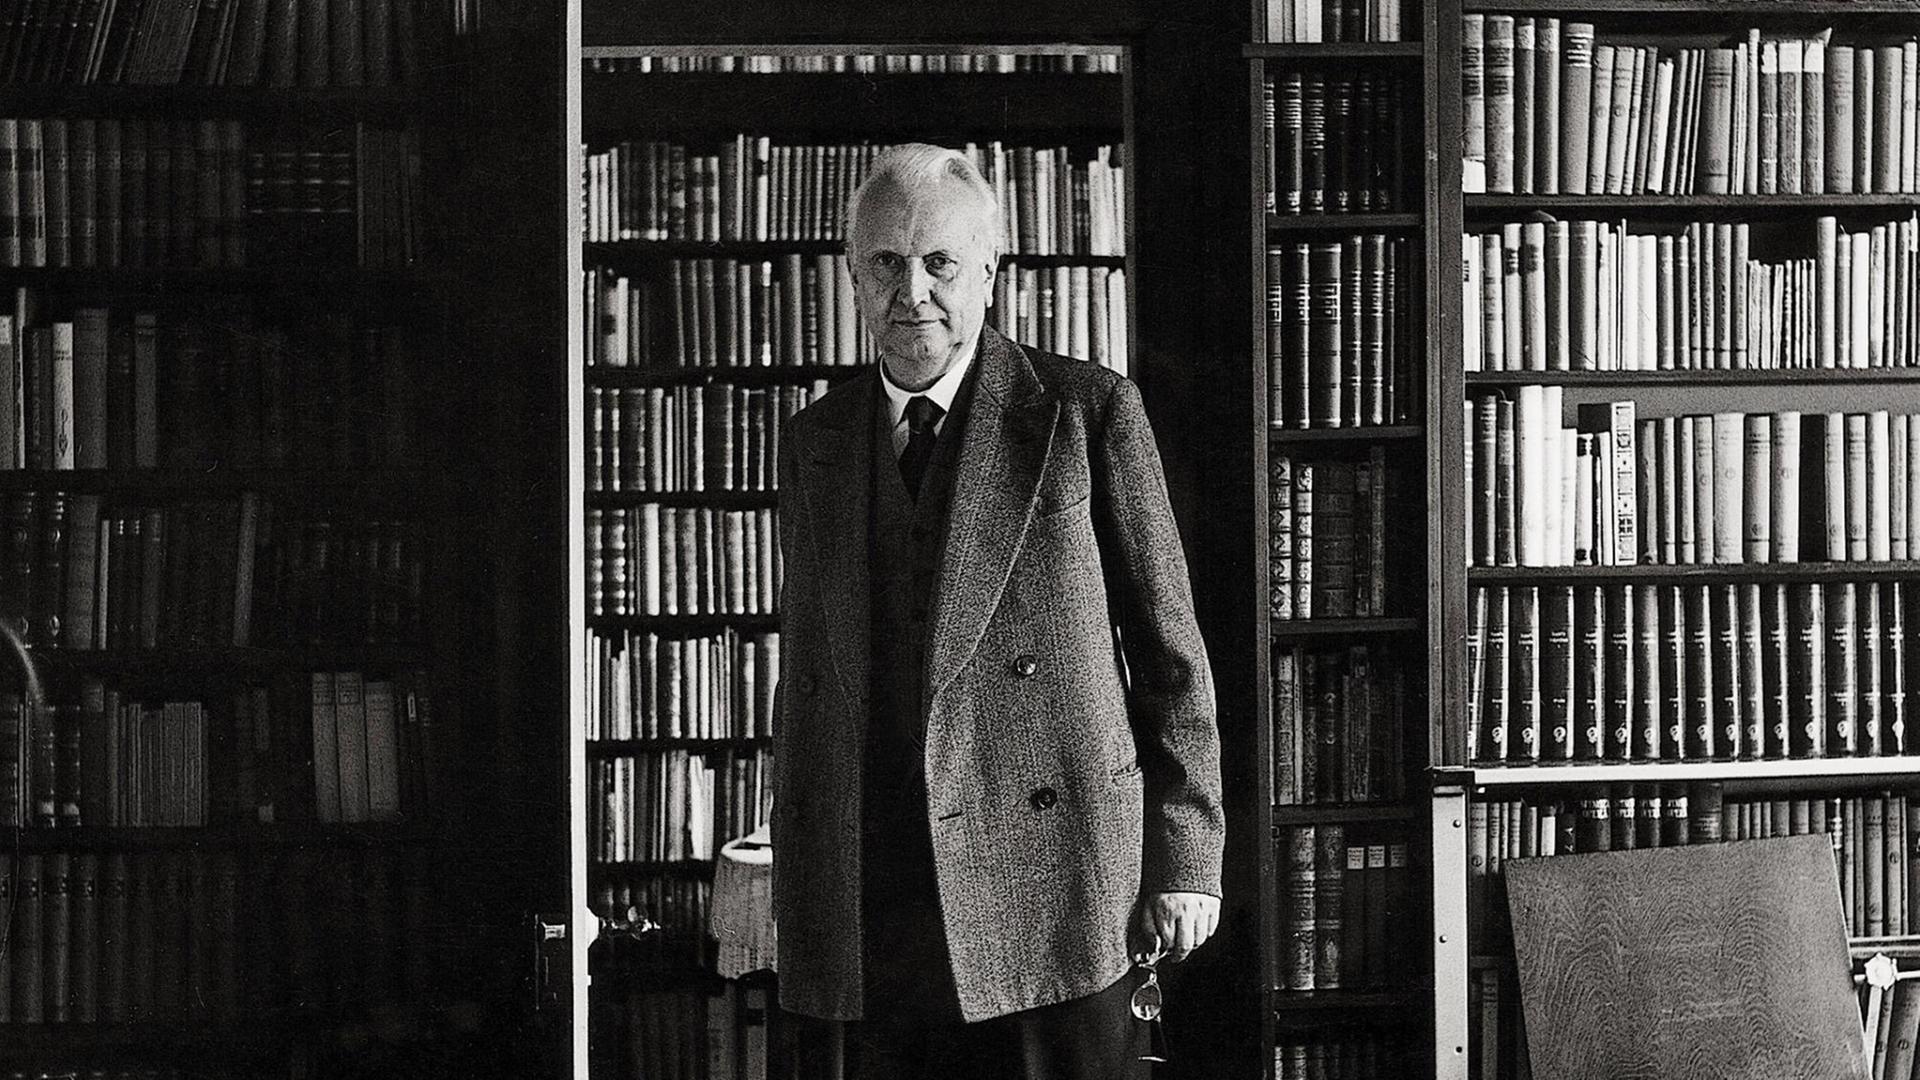 Der Philosoph Karl Jaspers (1956), im Hintergrund sieht man Bücherregale.